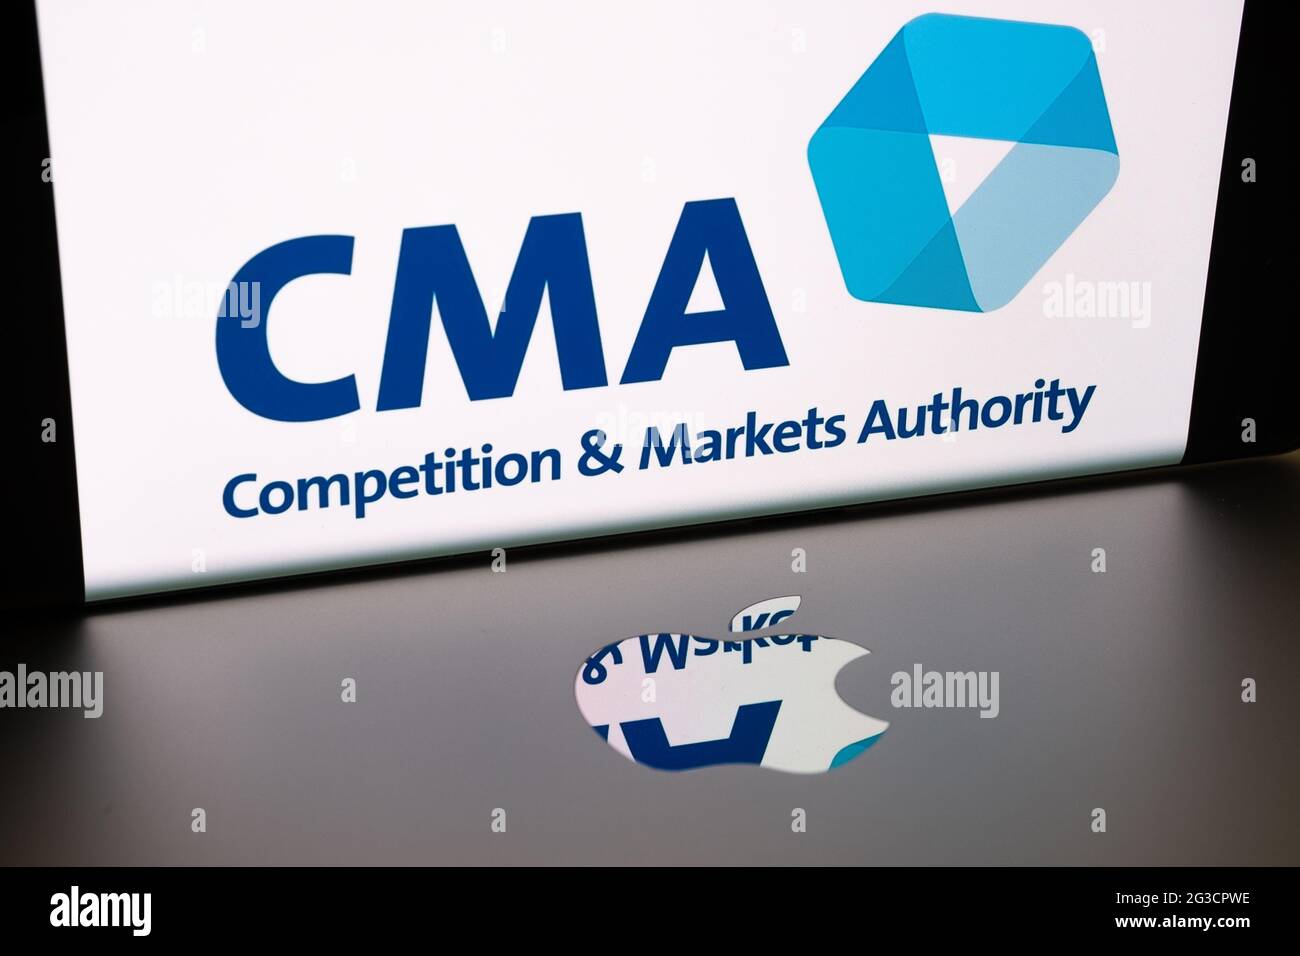 Logo Apple sulla superficie del macbook e logo del concorso CMA britannico e della Markets Authority sfocati visualizzati sullo schermo dello smartphone. Concetto. Stafford, Re Unito Foto Stock